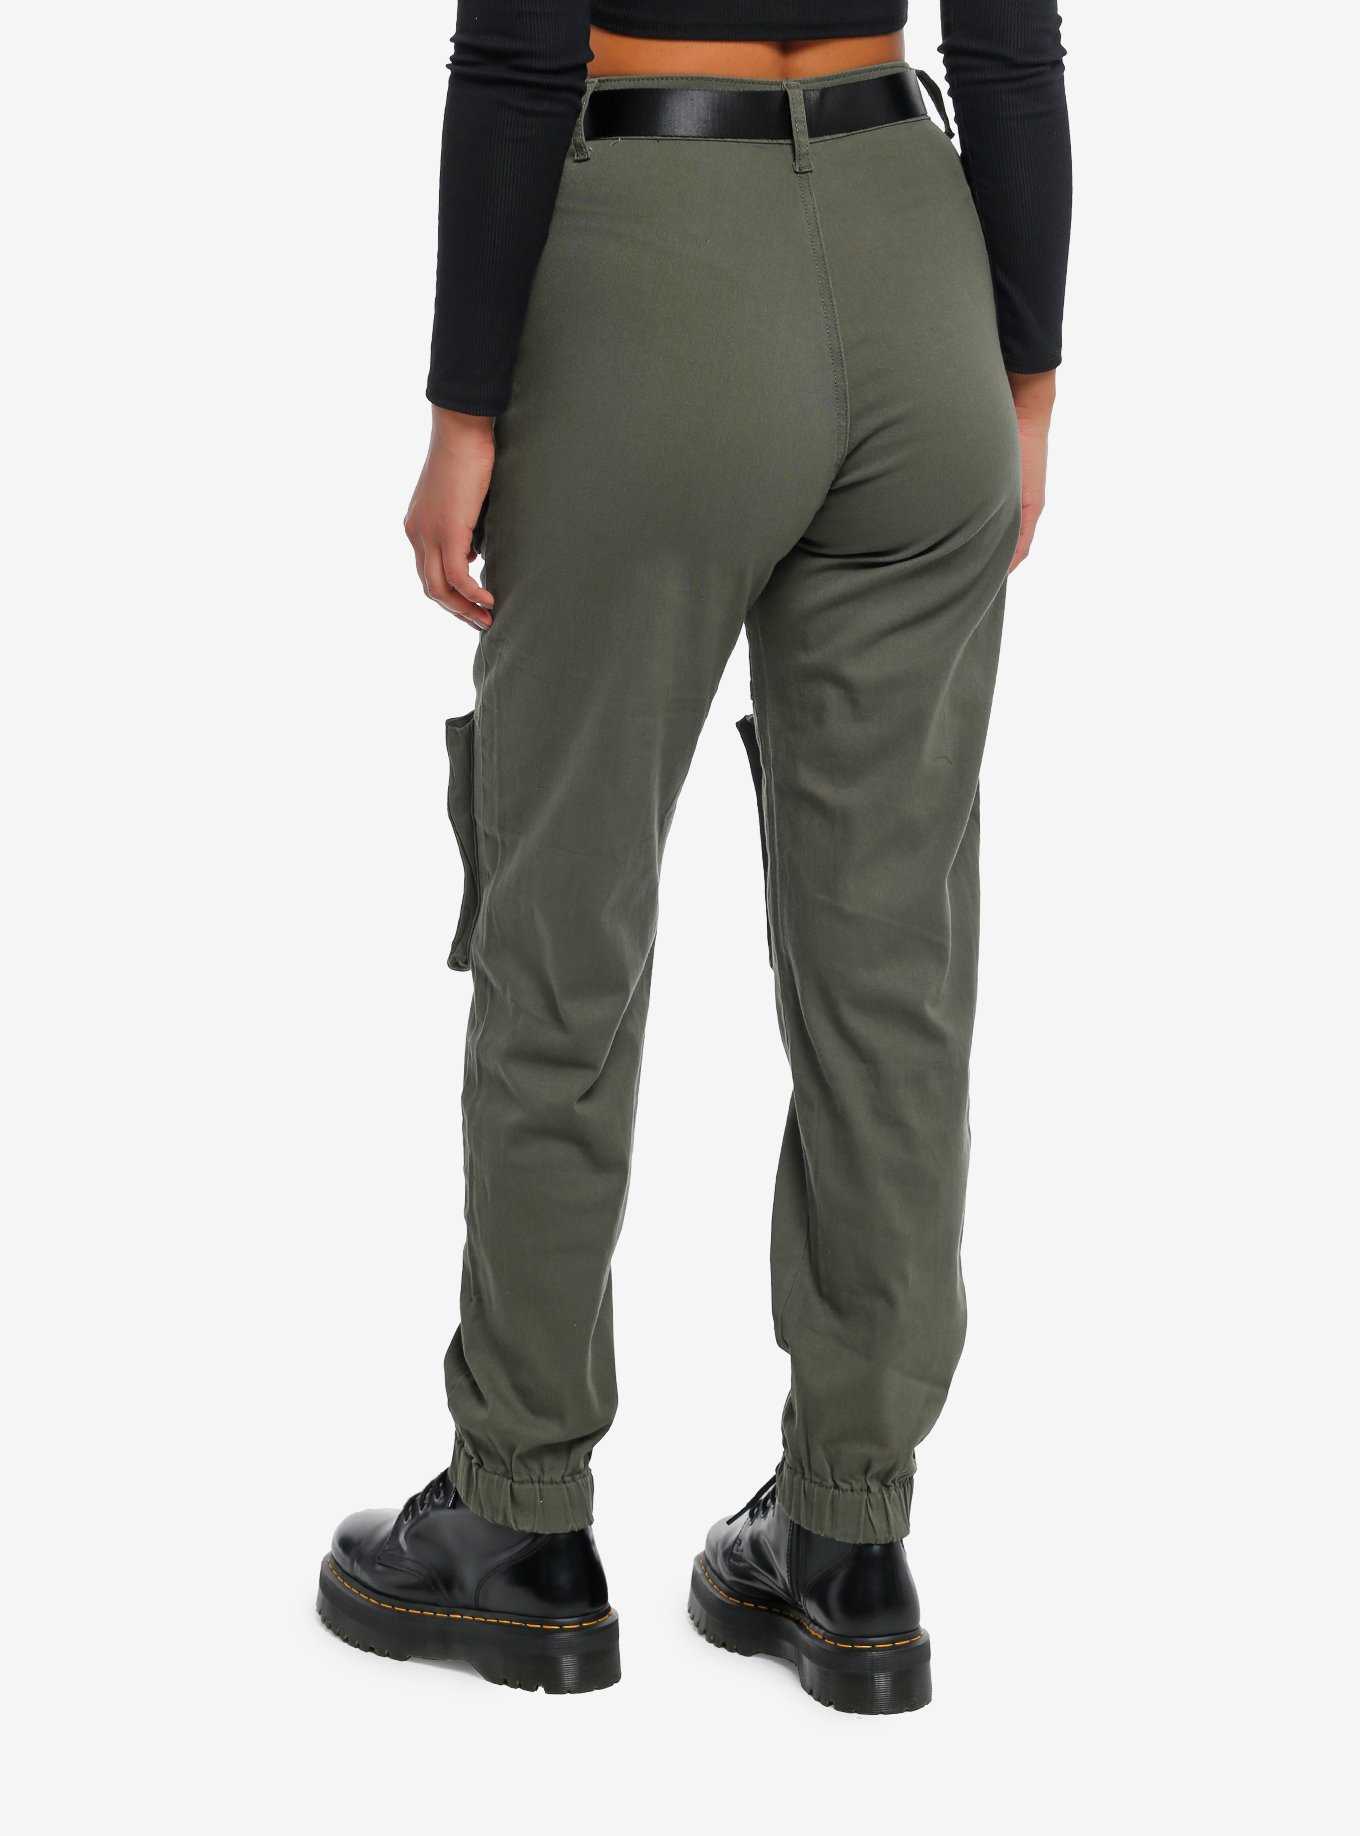 Olive Green Multi-Pocket Girls Jogger Pants, , hi-res